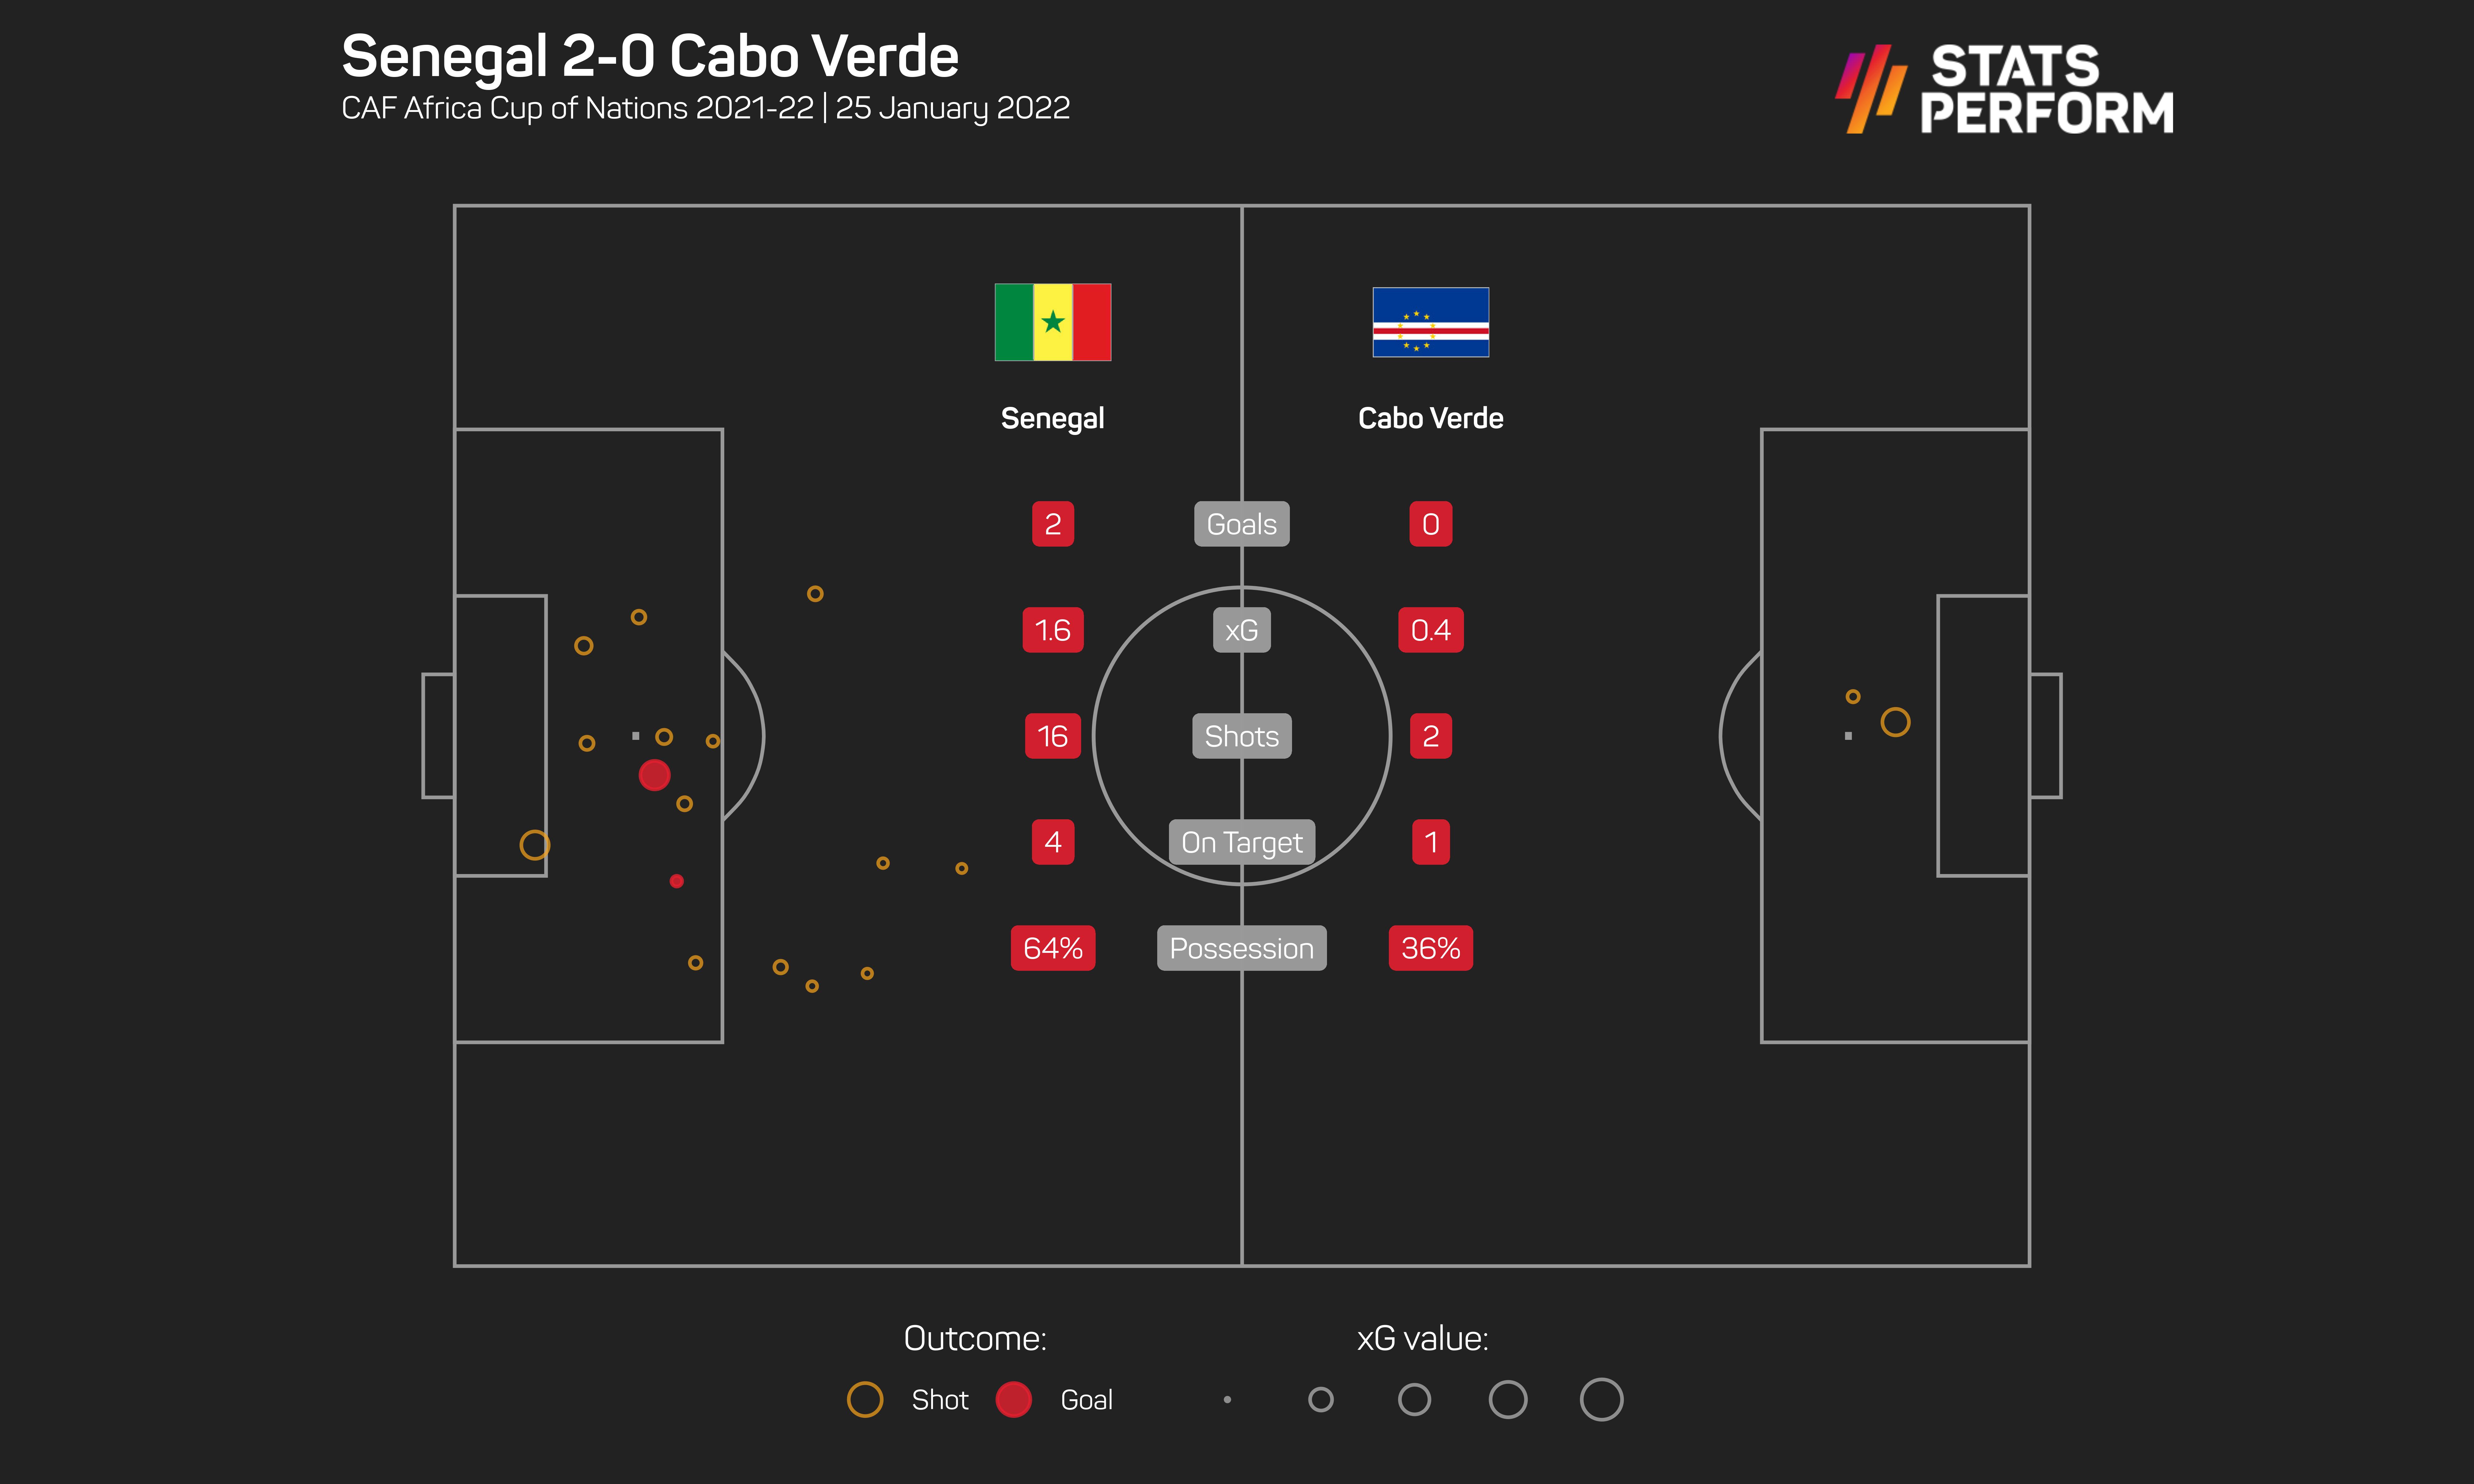 Senegal 2-0 Cape Verde: Expected goals